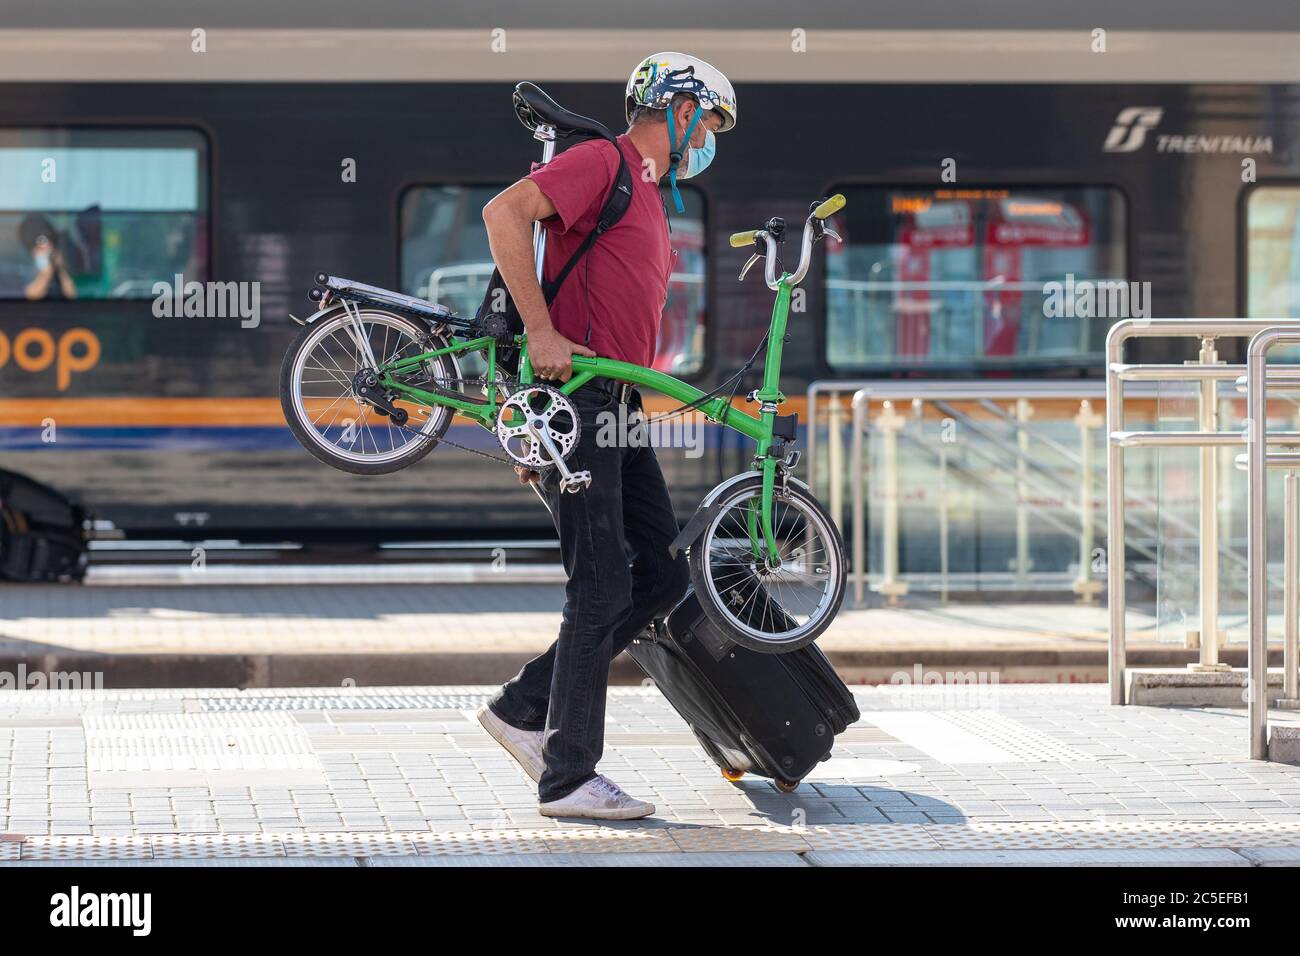 Ferrara, Italien. Juli 2020. Ein Mann reist mit seinem tragbaren und faltbaren Fahrrad mit dem Zug nach Ferrara, Italien. Bild: Filippo Rubin / Alamy Stockfoto